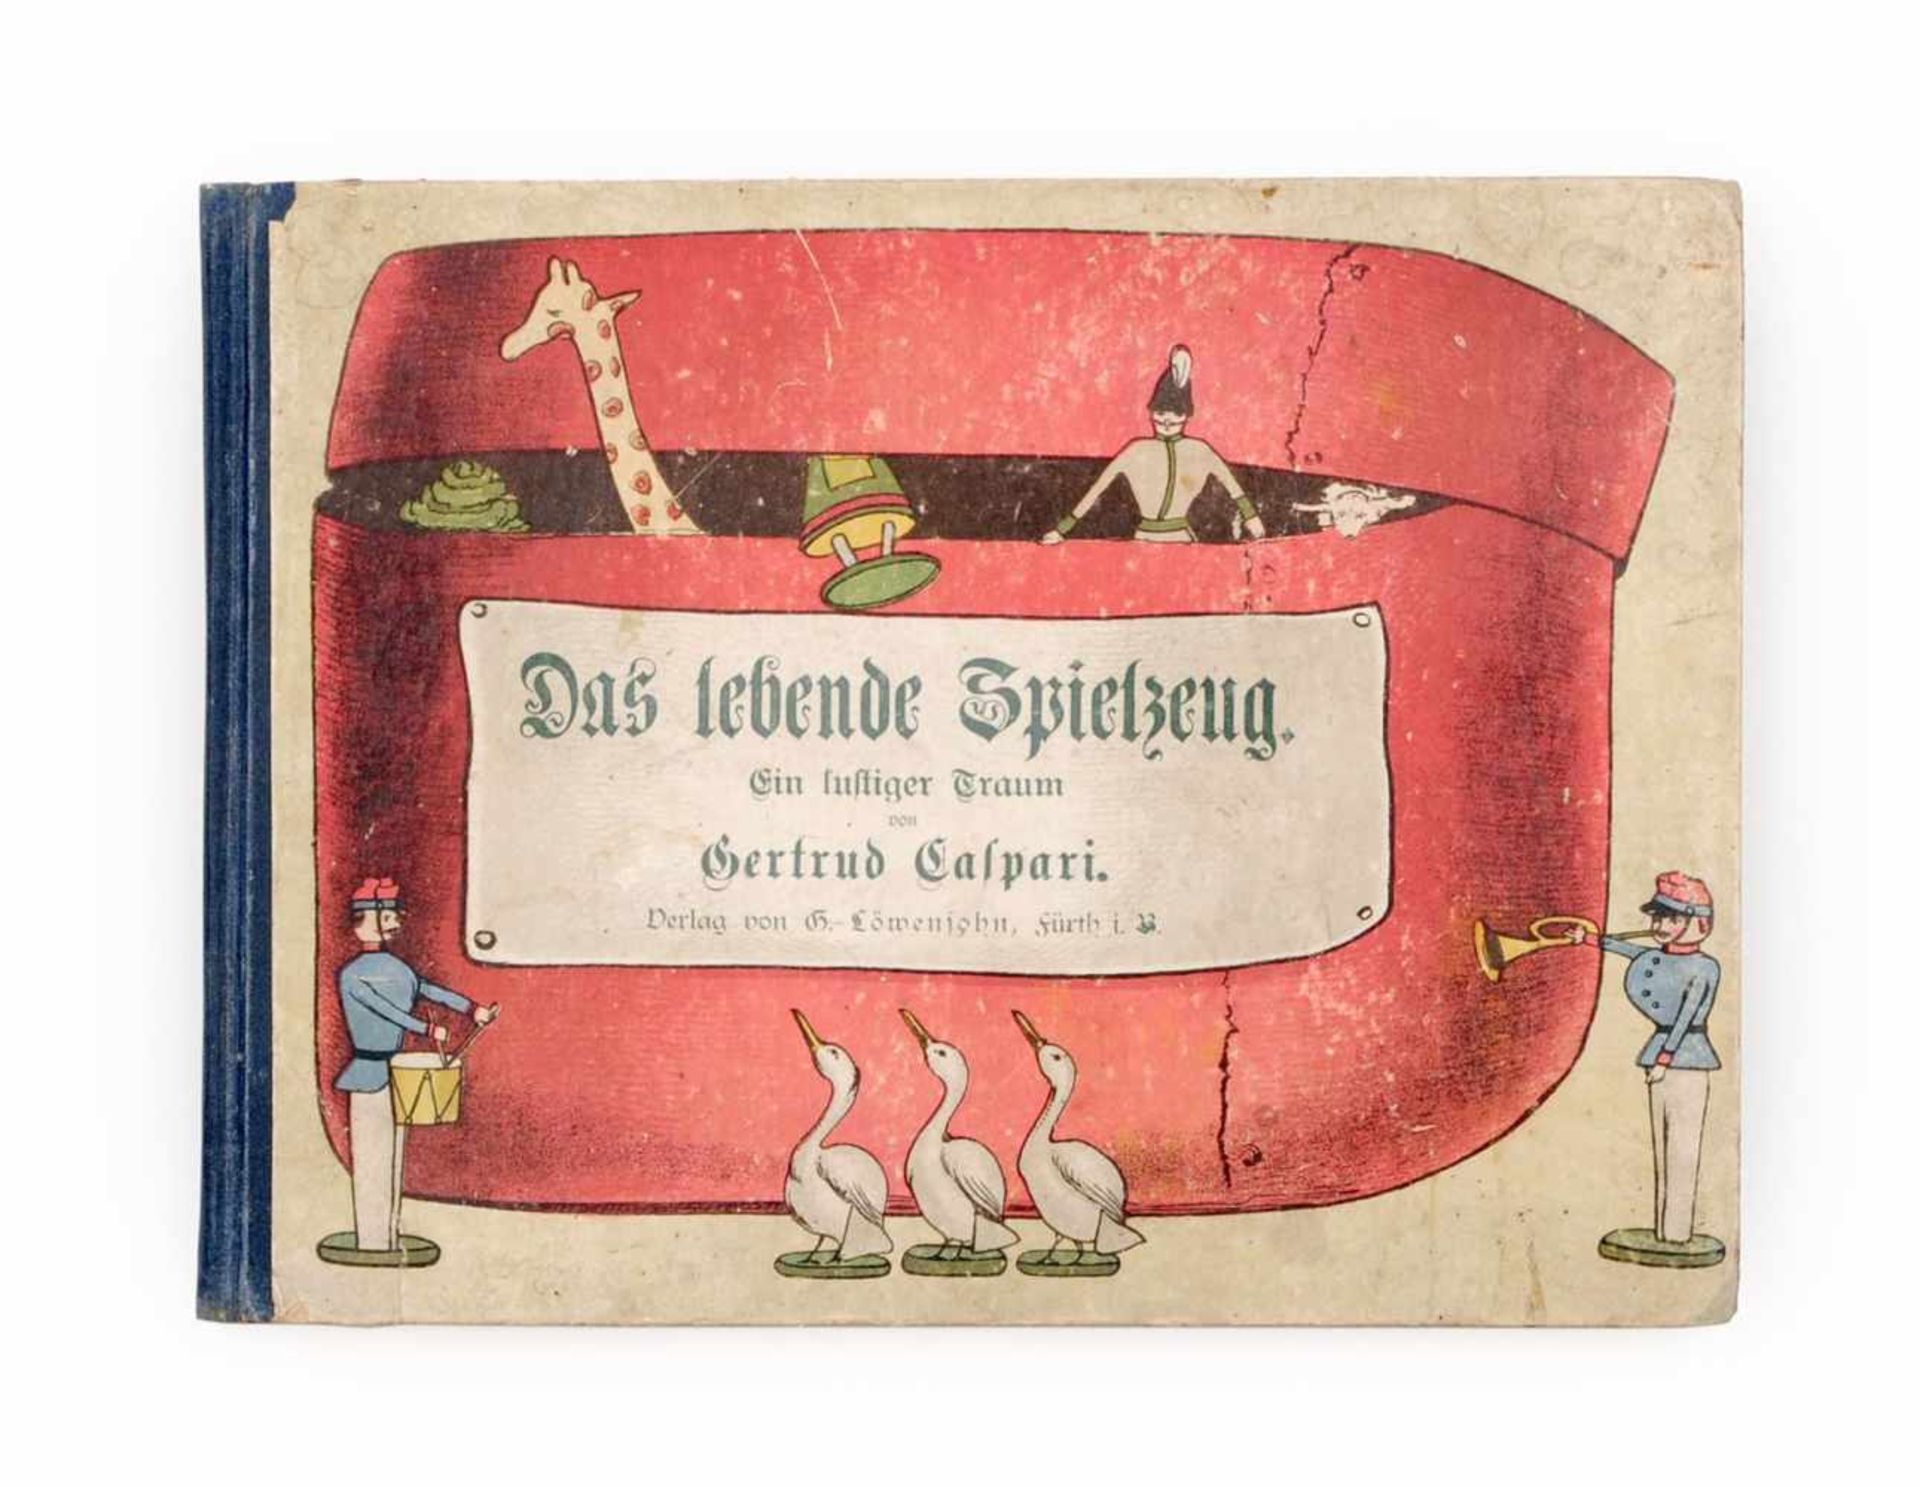 Gertrud Caspari "Das lebende Spielzeug. Ein lustiger Traum". Um 1905.